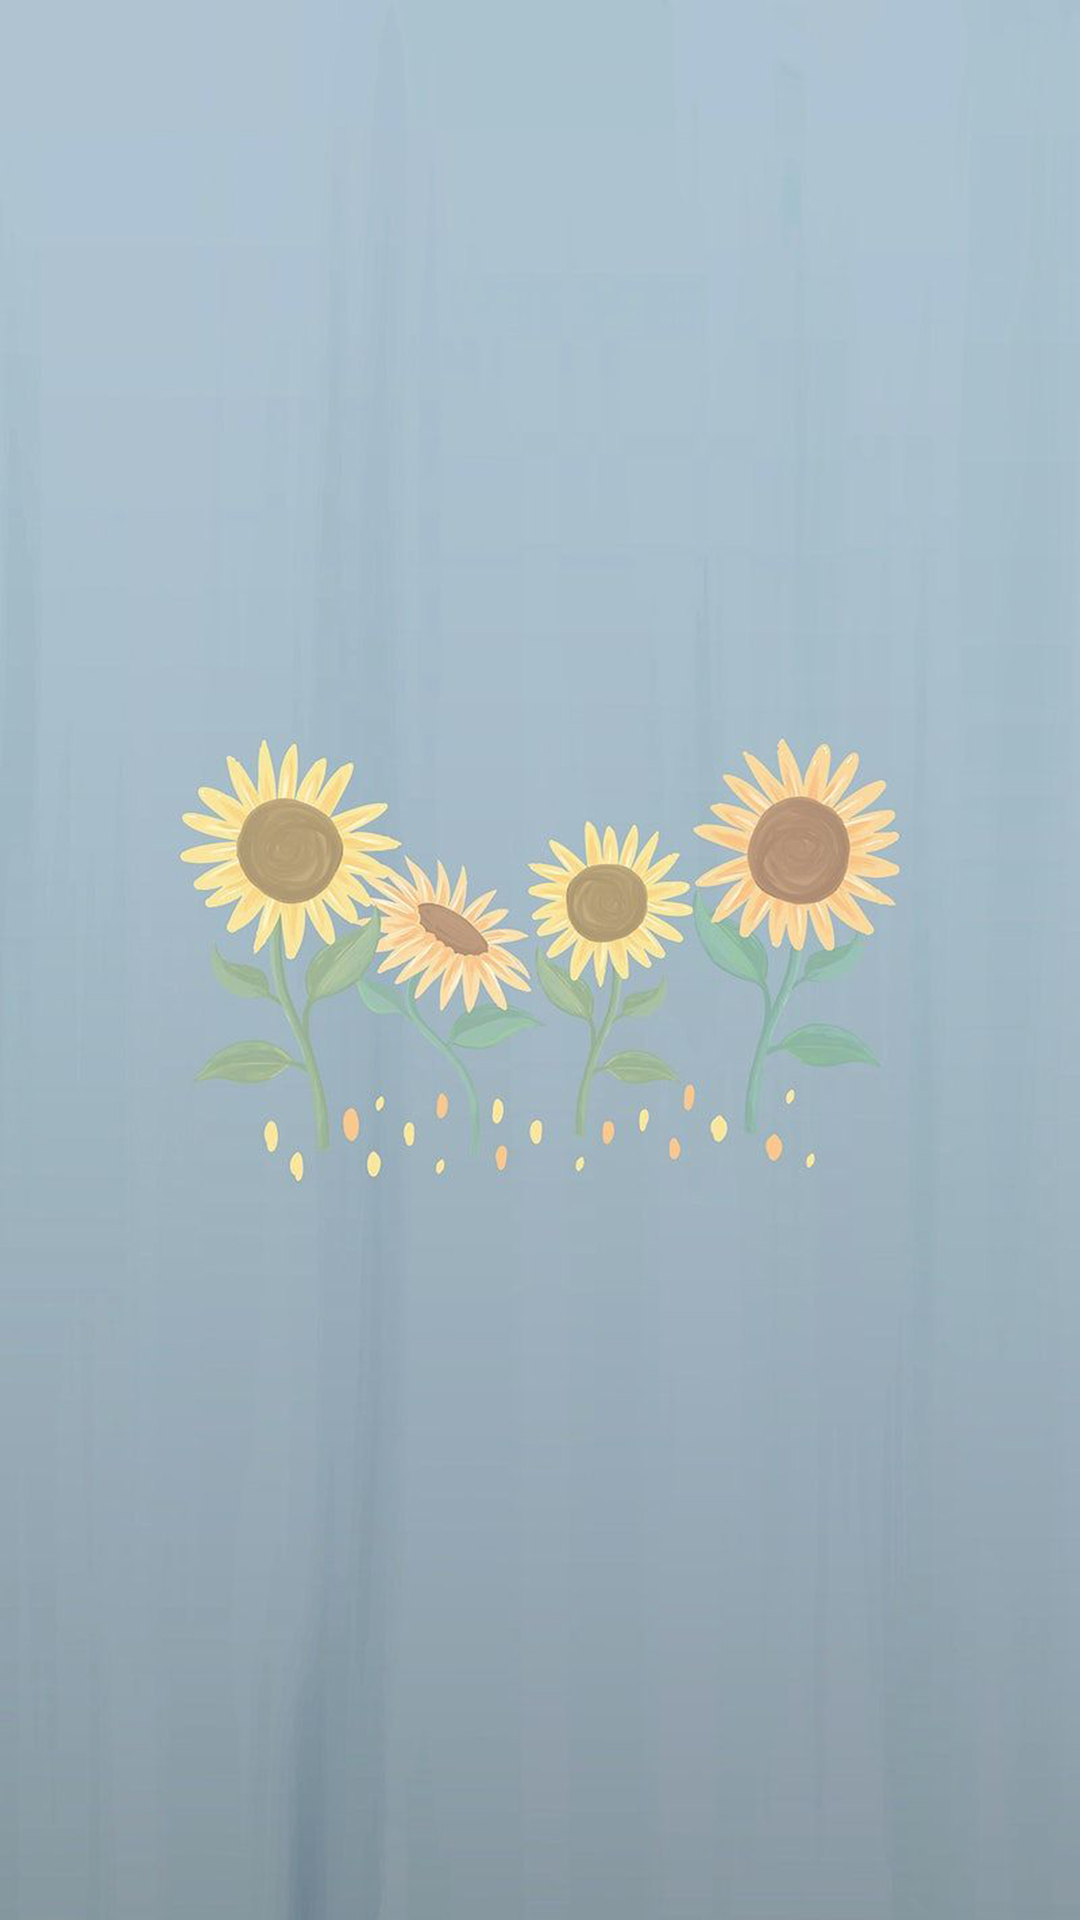 Free Sunflower Pattern Wallpaper  EPS Illustrator JPG PNG SVG   Templatenet